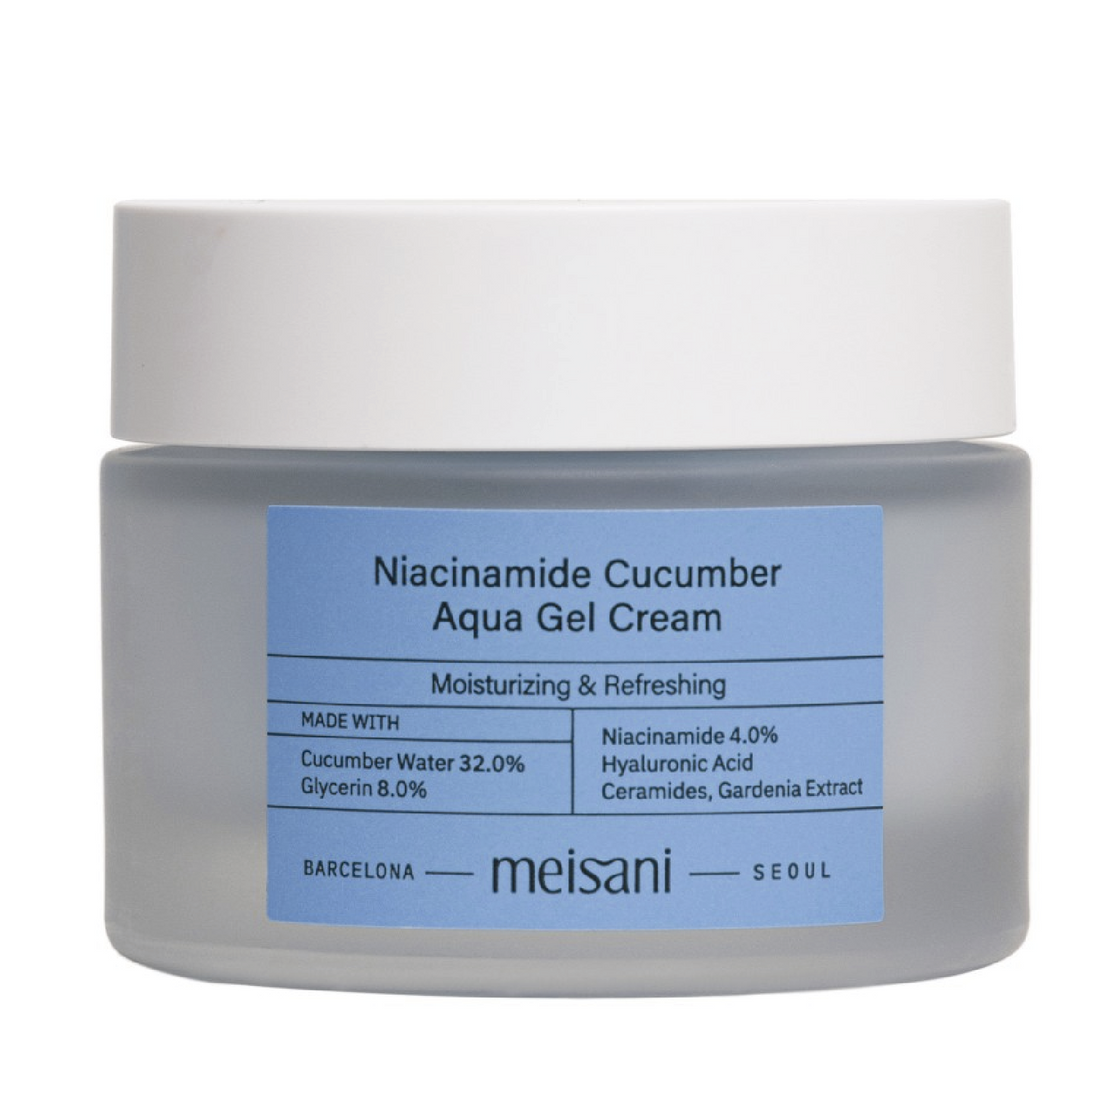 Meisani | Niacinamide Cucumber Aqua Gel Cream